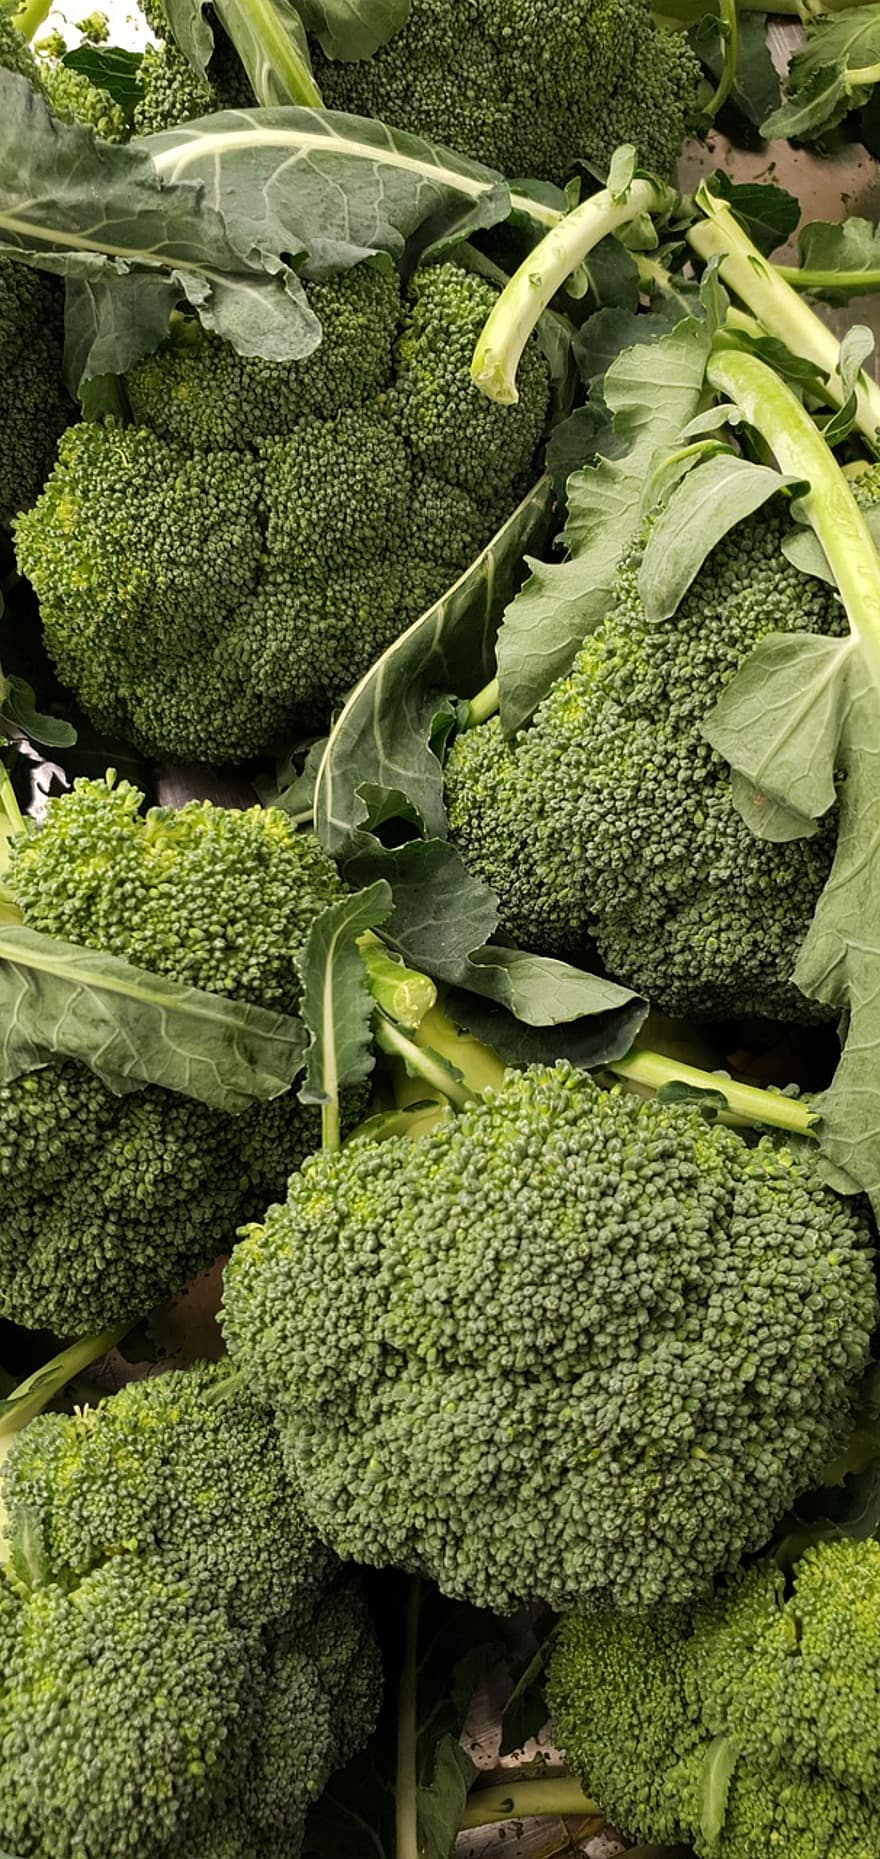 Broccoli, Vegetables, Fresh Broccoli, Harvest, freshness, vegetable, food, healthy eating, organic, leaf, agriculture